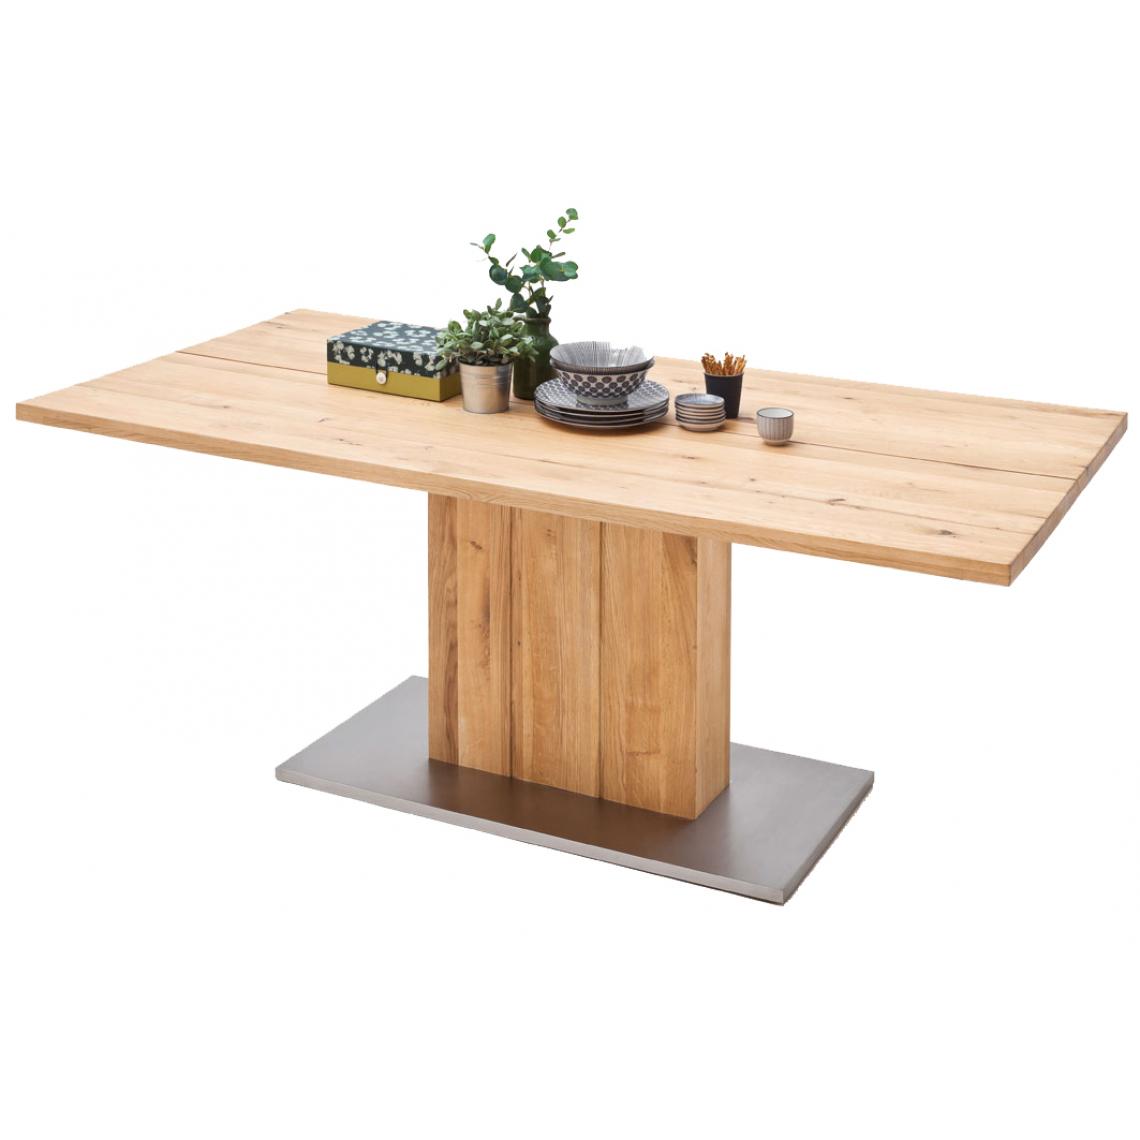 Pegane - Table à manger en chêne massif huilé avec dessus divisé - L200 x H77 x P100 cm - Tables à manger